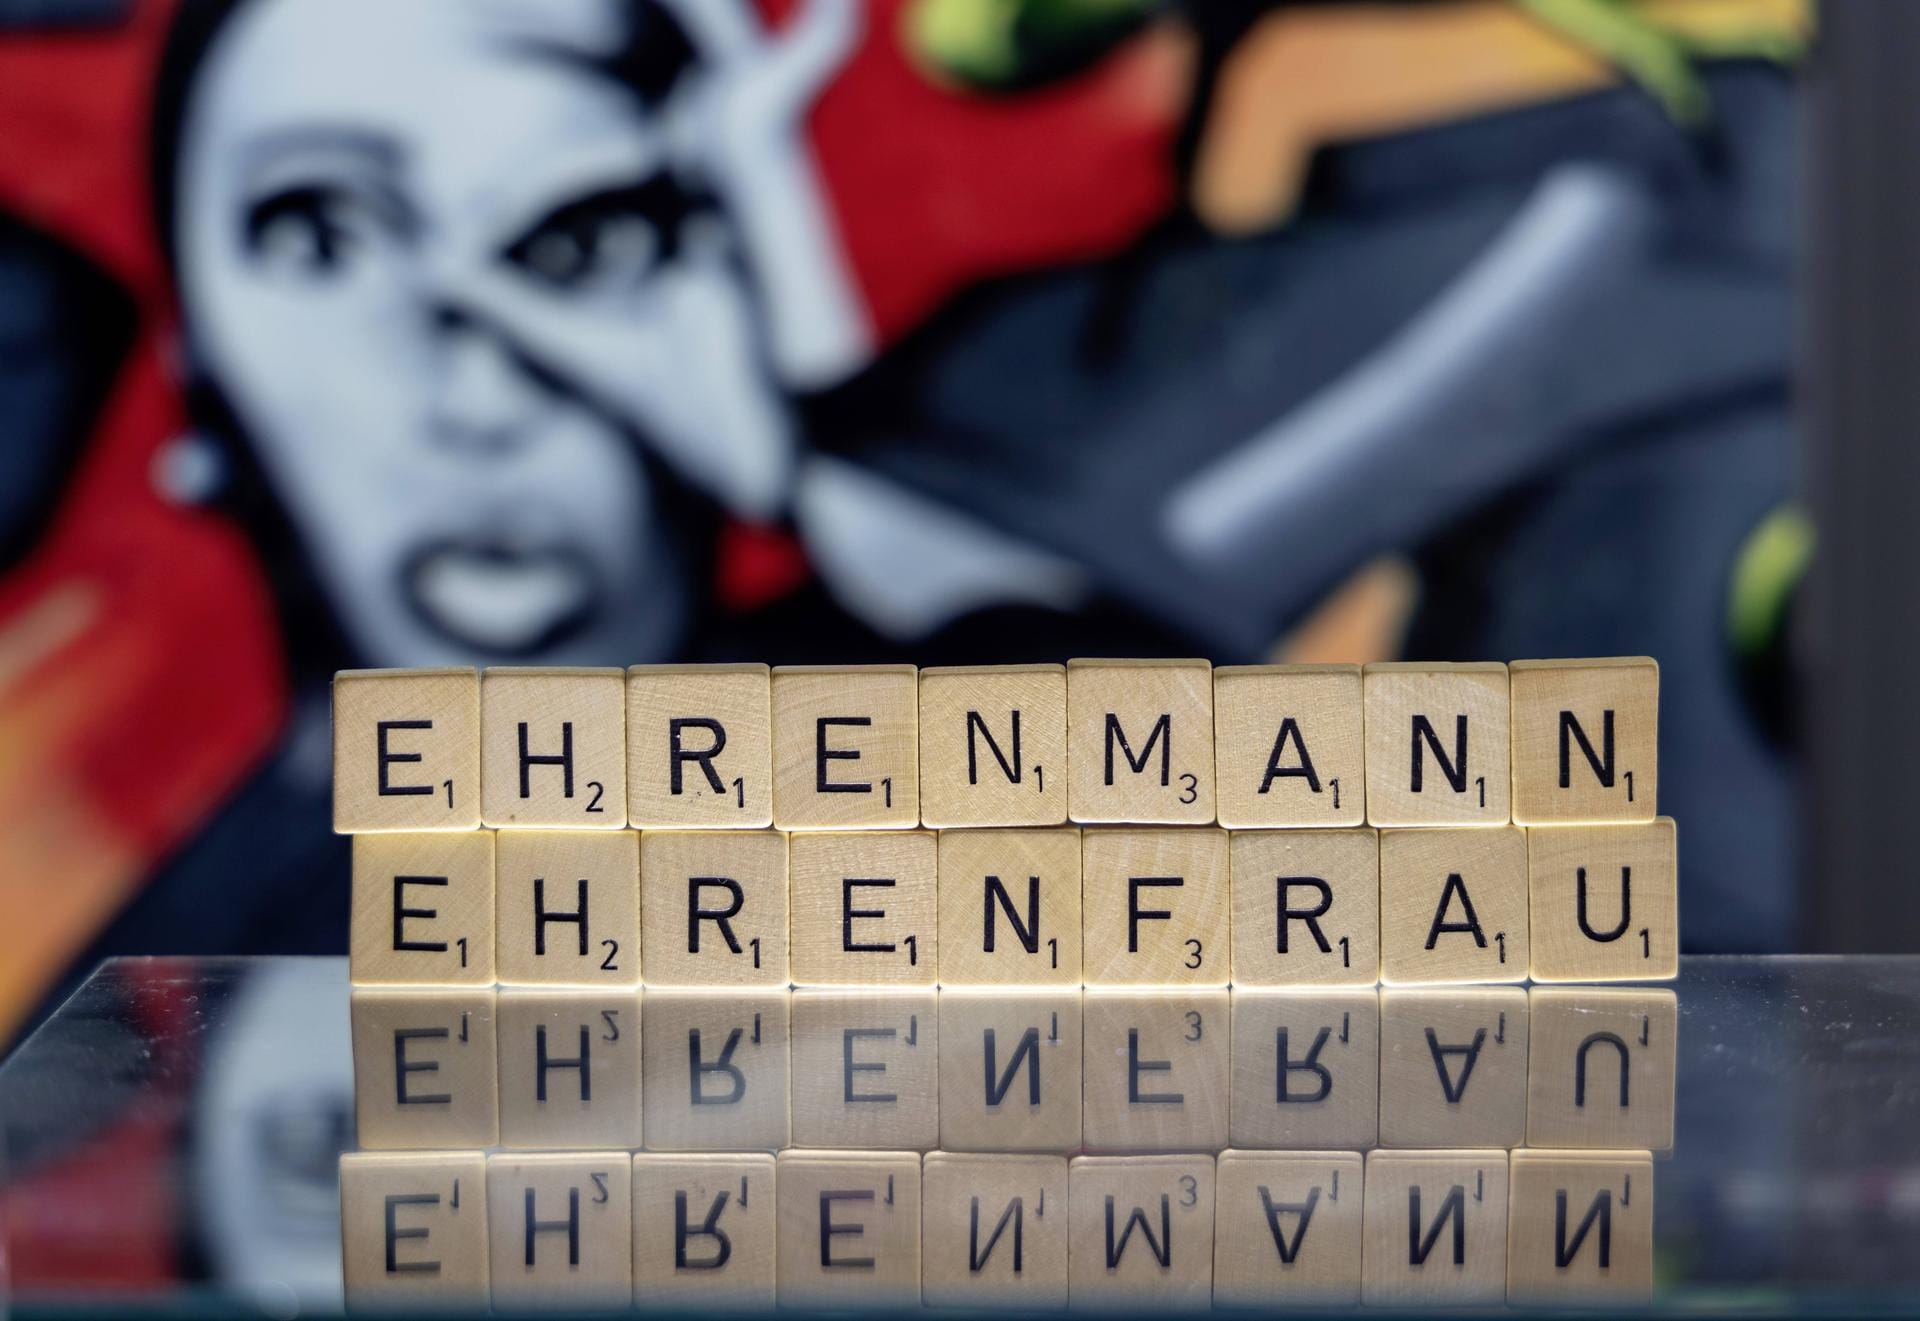 Zum Jugendwort des Jahres wählte eine Jury aus Jugendlichen und Sprachexperten "Ehrenmann"/"Ehrenfrau". Der Begriff löste "I bim's" ab. Die Wahl ist eine Werbeaktion des Verlags Langenscheidt und existiert seit 2008.